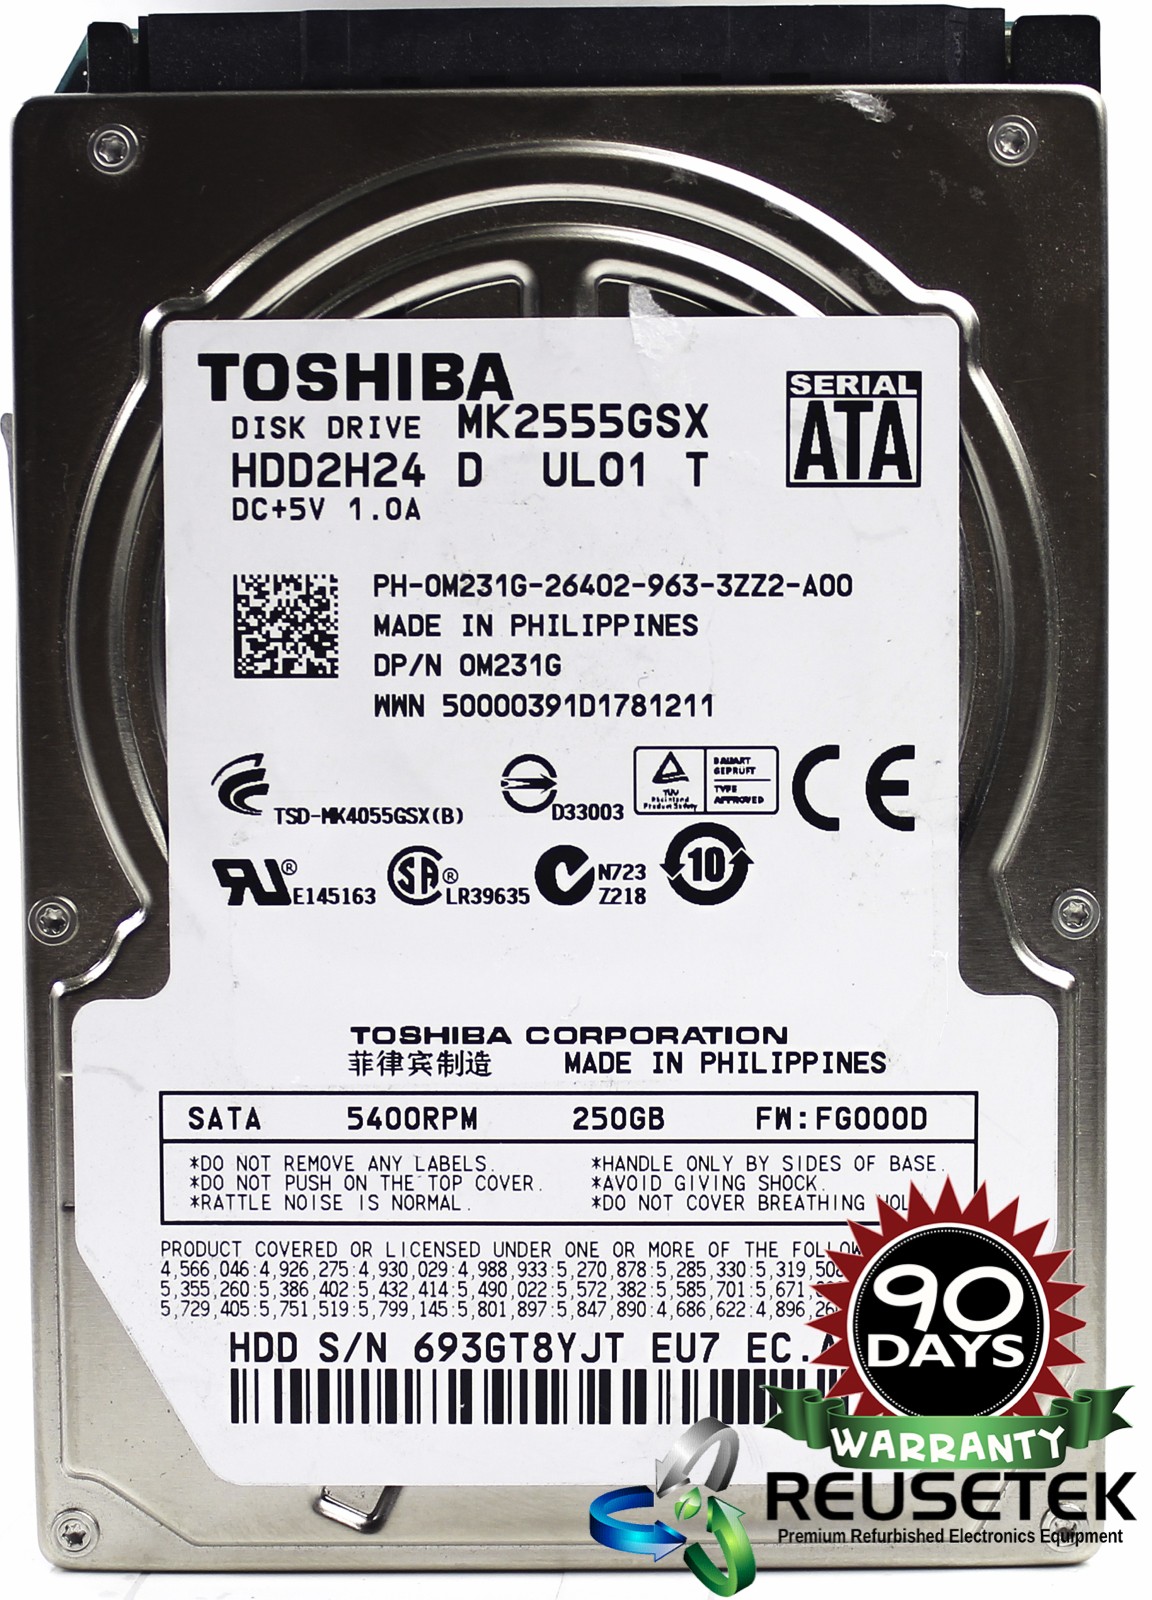 100512-SN12352605-Toshiba MK2555GSX RPM: 5400 250GB 2.5" Sata Hard Drive-image